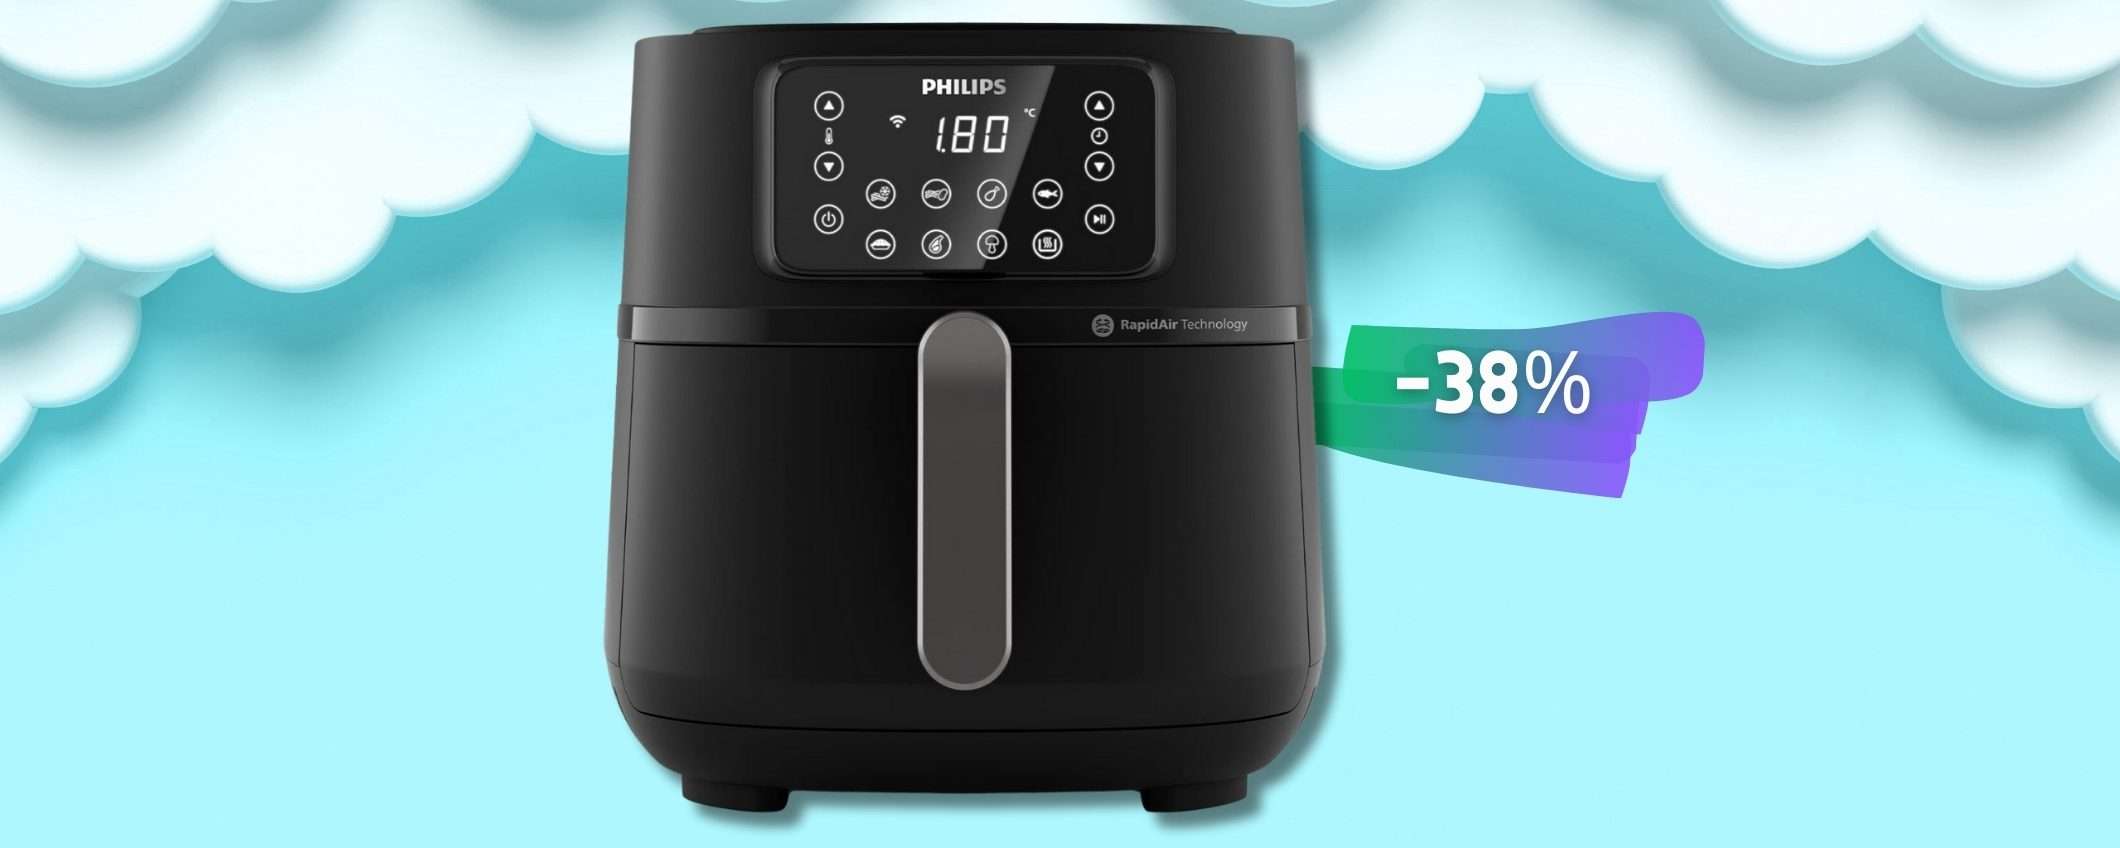 Philips Airfryer XXL è un COLOSSO in cucina: connessa al WiFi e 16-in-1